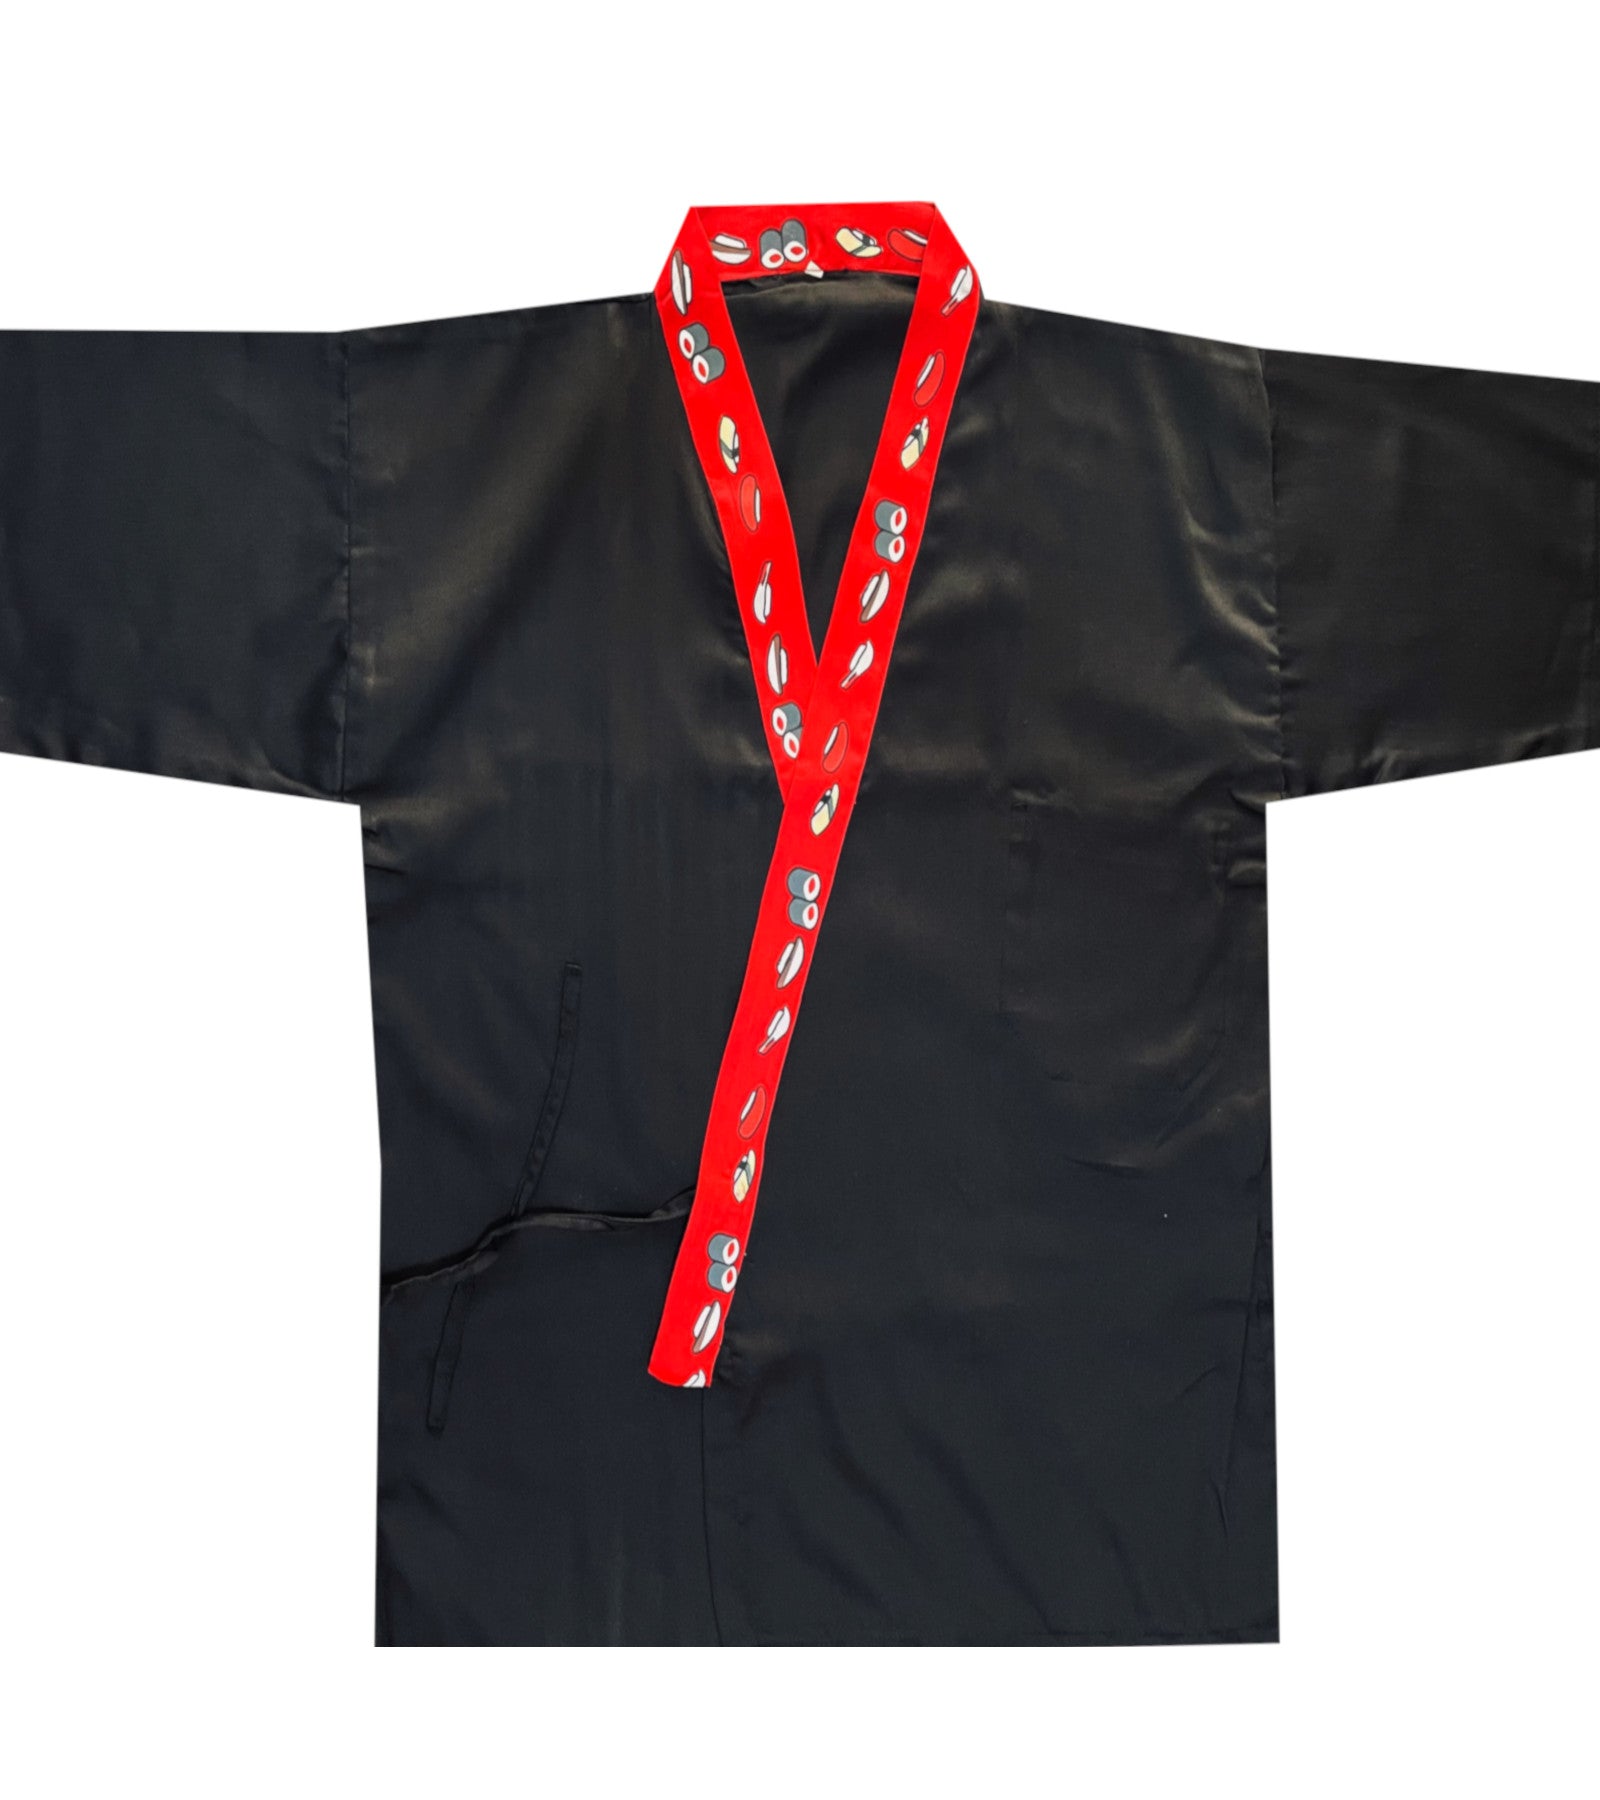 sushi coat, sushi chef coat, sushi prints Jacket, sushi chef apparel